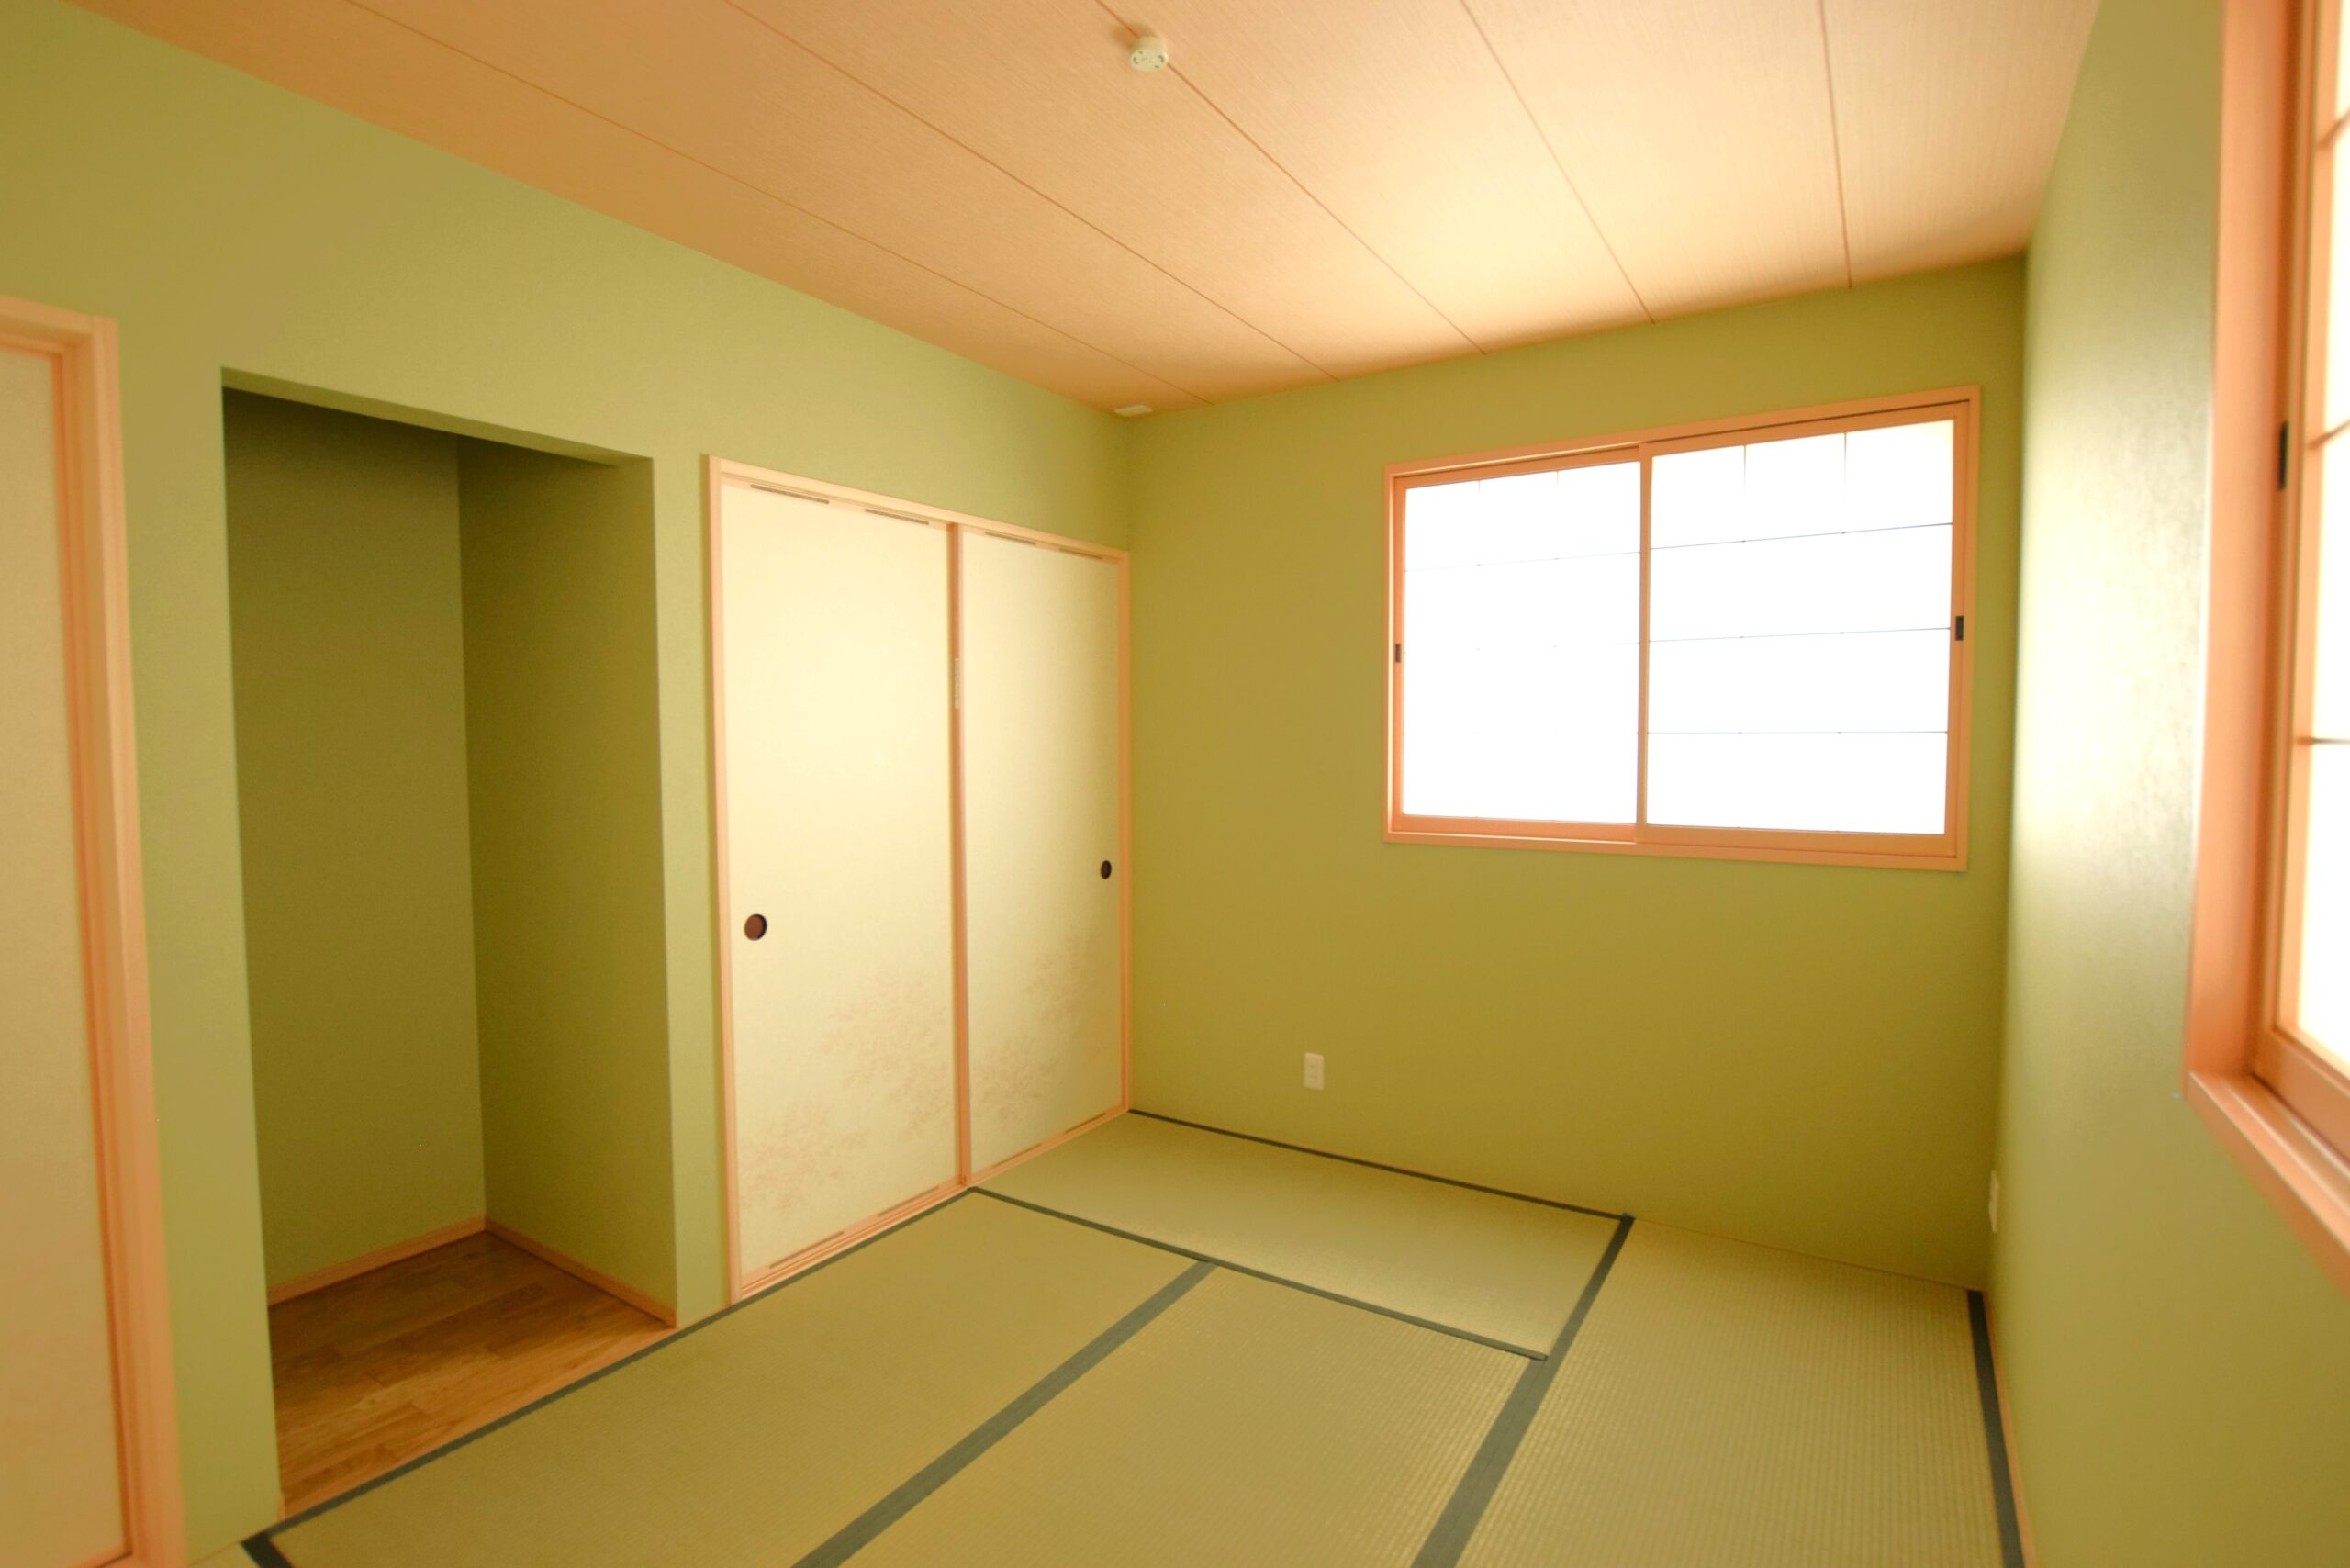 杉柾目柄の天井に緑色のクロスを組み合わせ、落ち着いた雰囲気の和室に<br/>
天井　SP2869 　/　クロス　SP2880